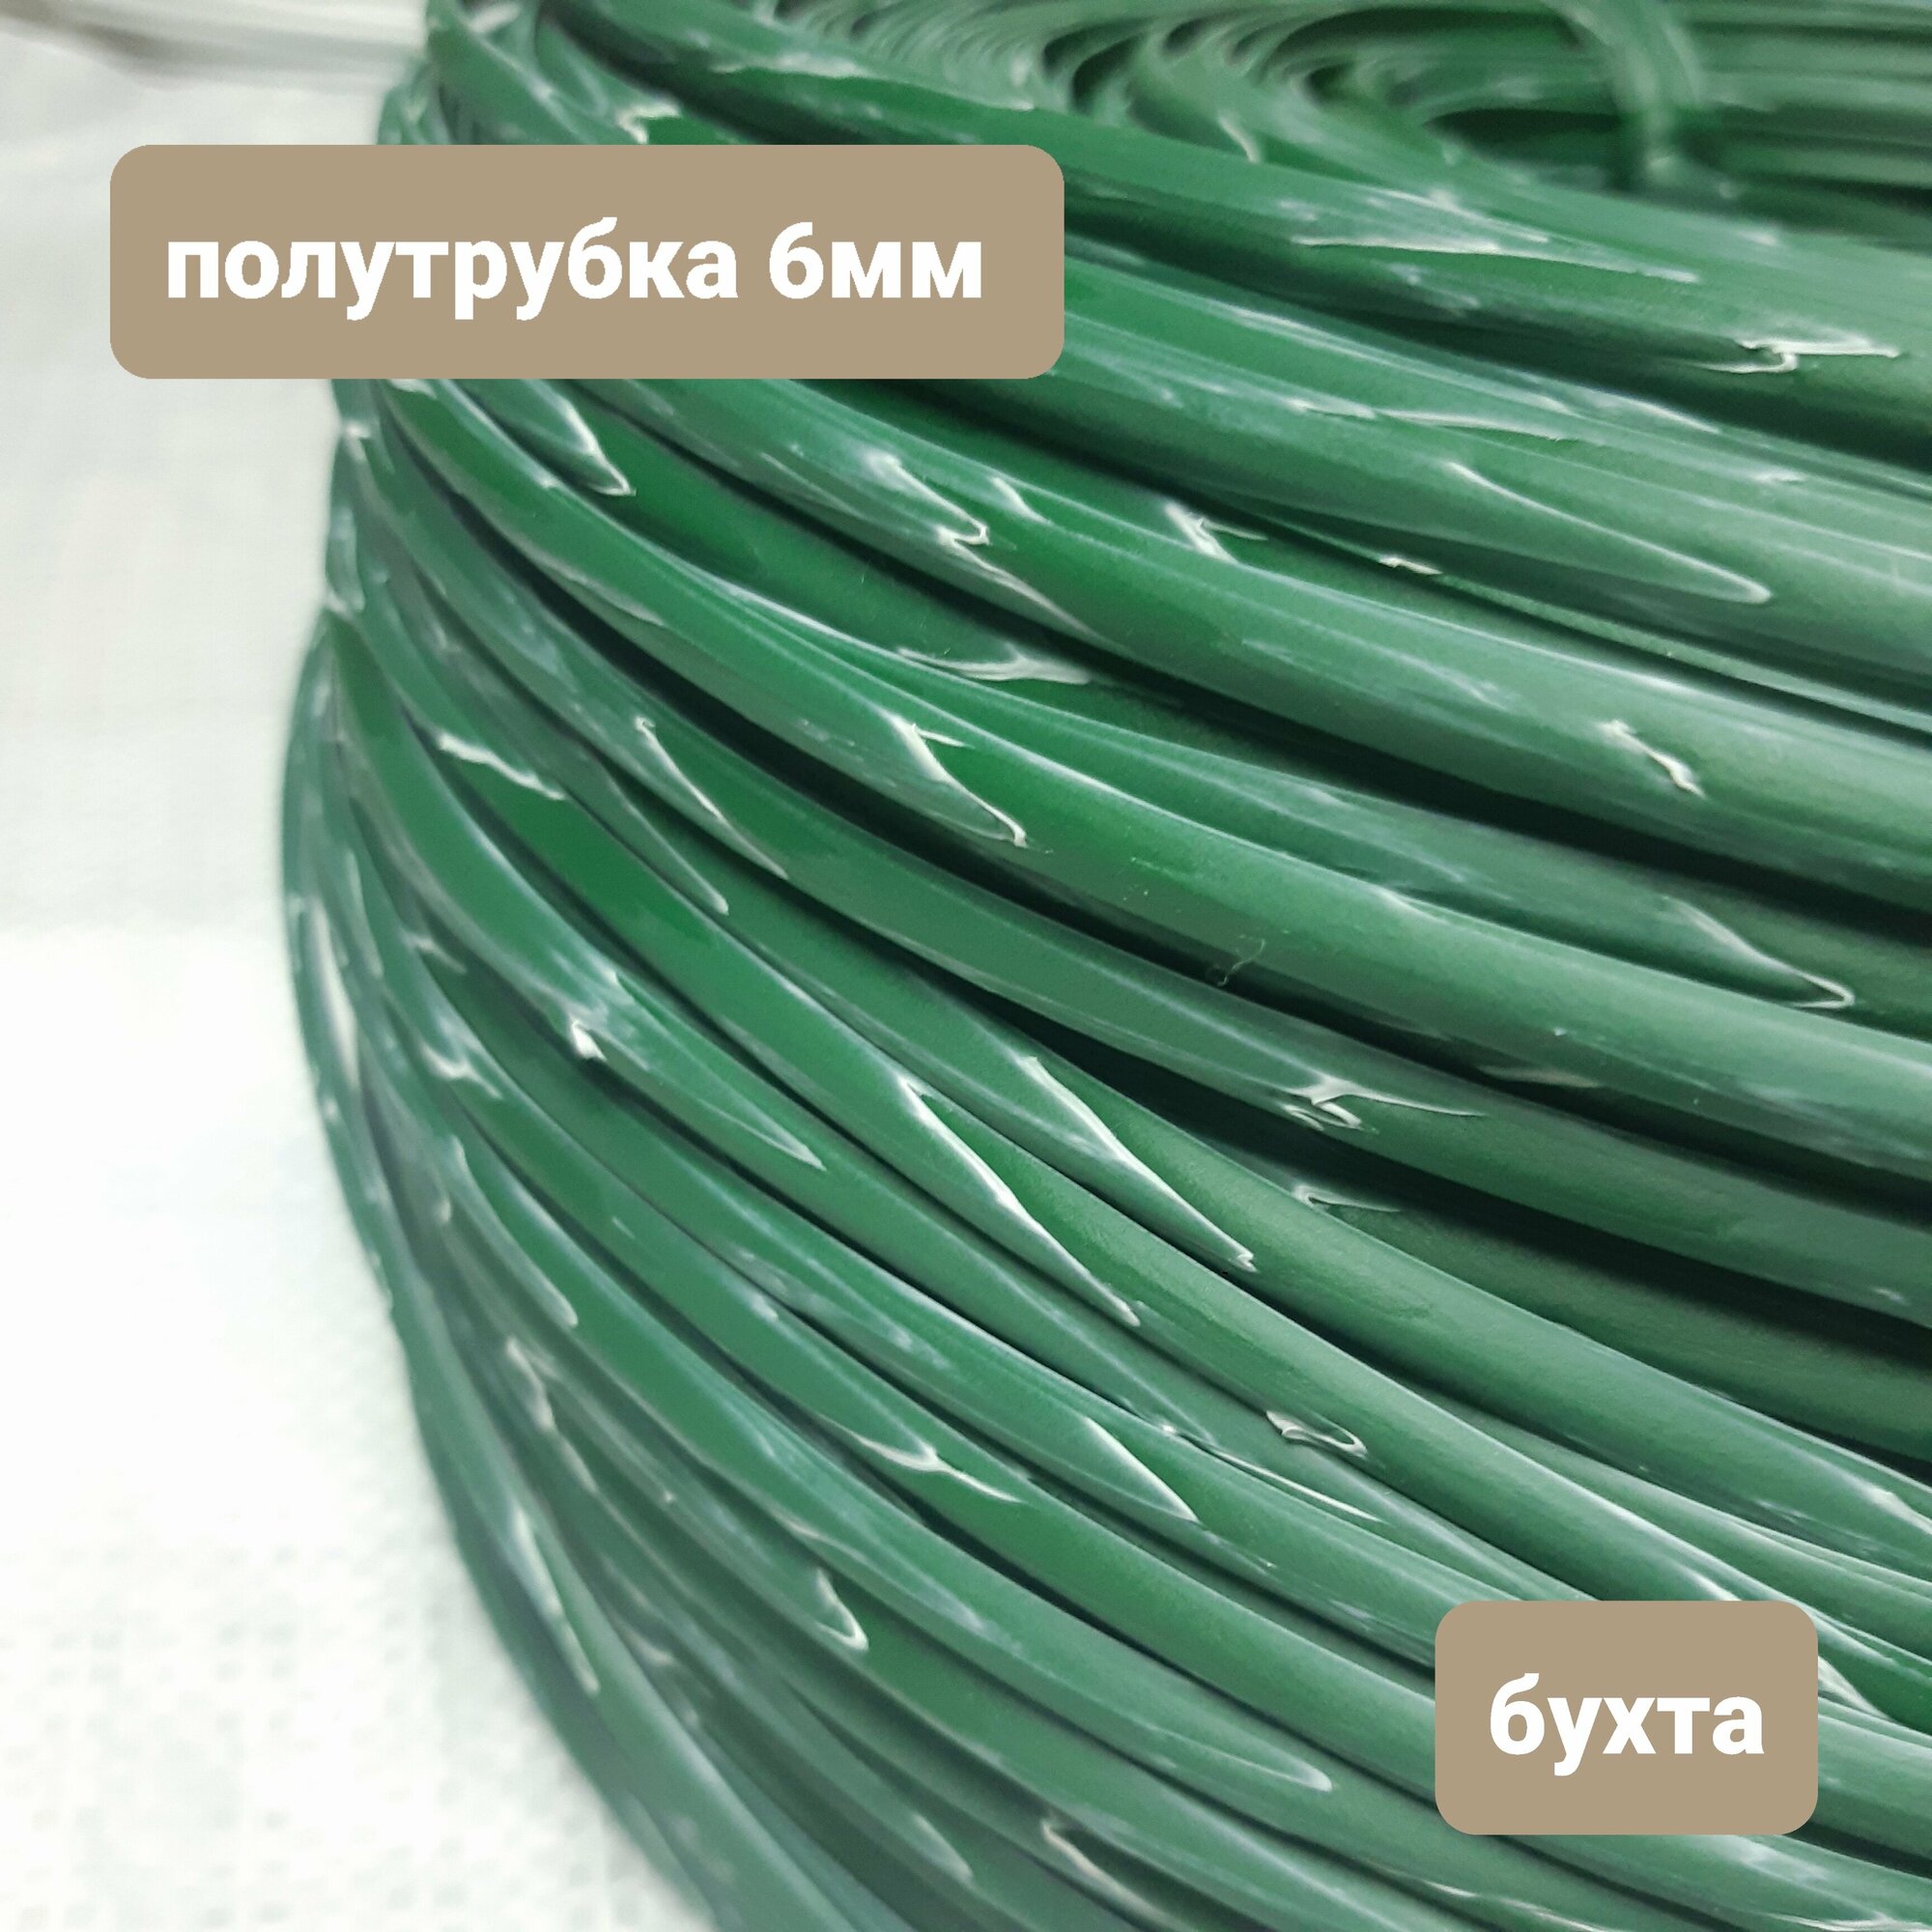 Ротанг для плетения, зеленый с белым, полутрубка 6мм, гладкий, бухта 5,1кг